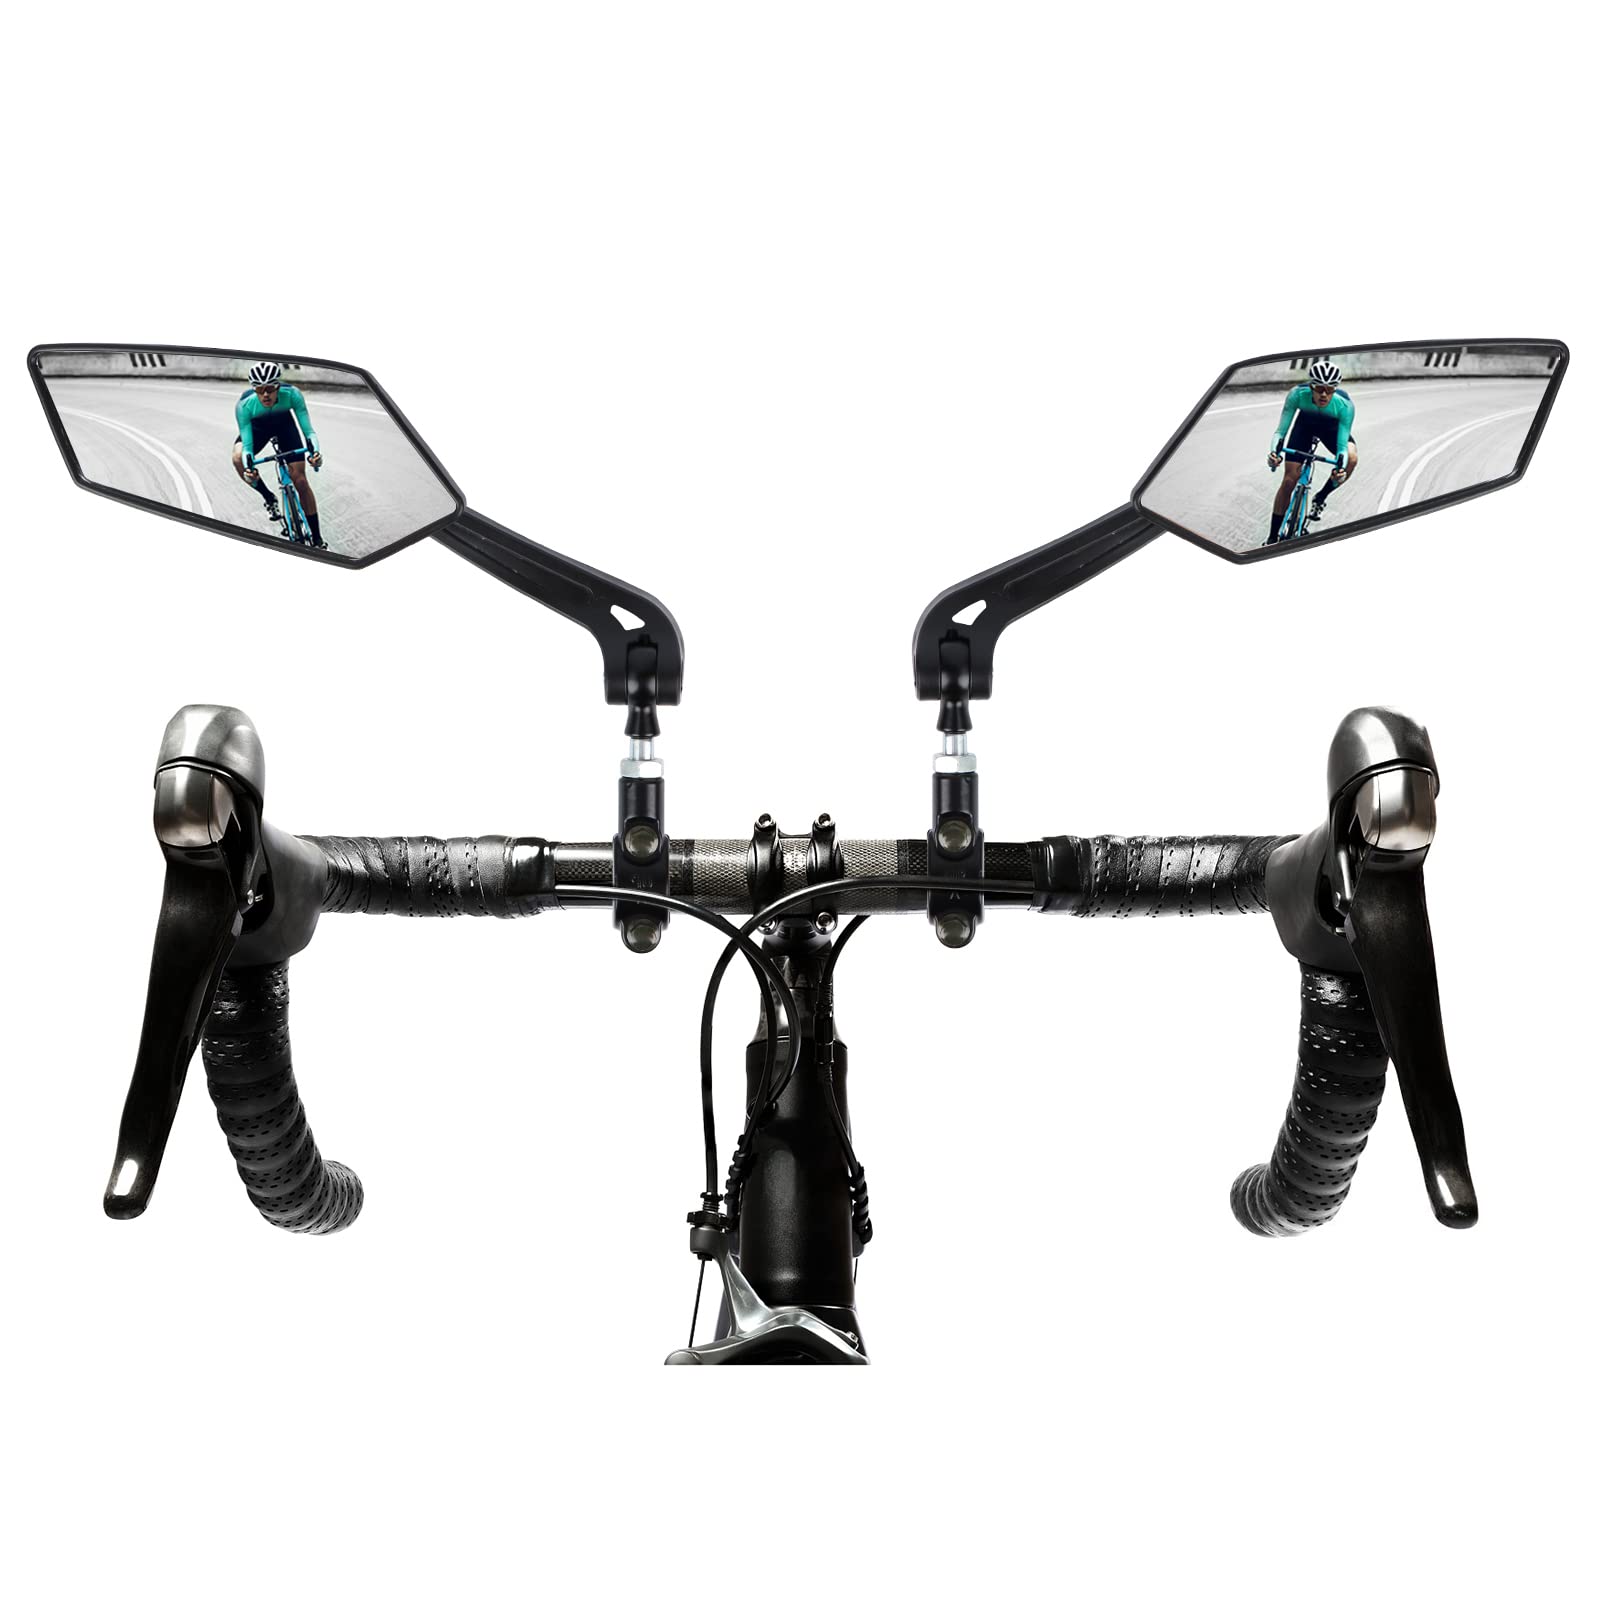 Fahrradspiegel 1 Paar HD Fahrrad Rückspiegel 360 Grad drehbare und einstellbare Fahrradspiegel mit Große Spiegel Universal Fahrradspiegel für e-bike, E-Scooter, Elektroroller, Mountainbike von Fonyet